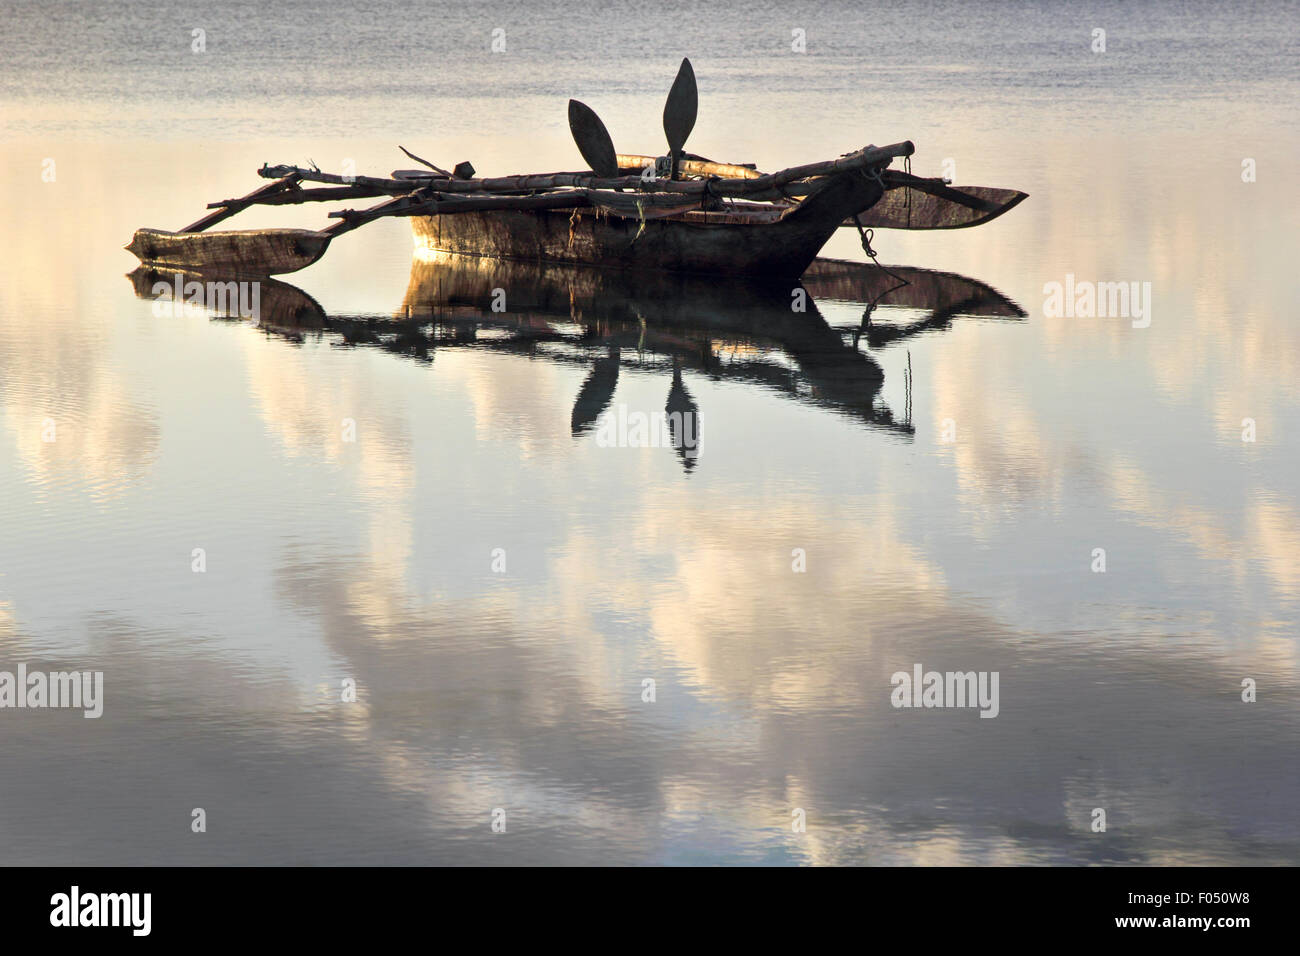 Eine Dhau, traditionellen Boot auf dem Roten Meer und den Indischen Ozean Gebiet verwendeten verankert auf einem sehr flachen Meer im Morgengrauen Stockfoto